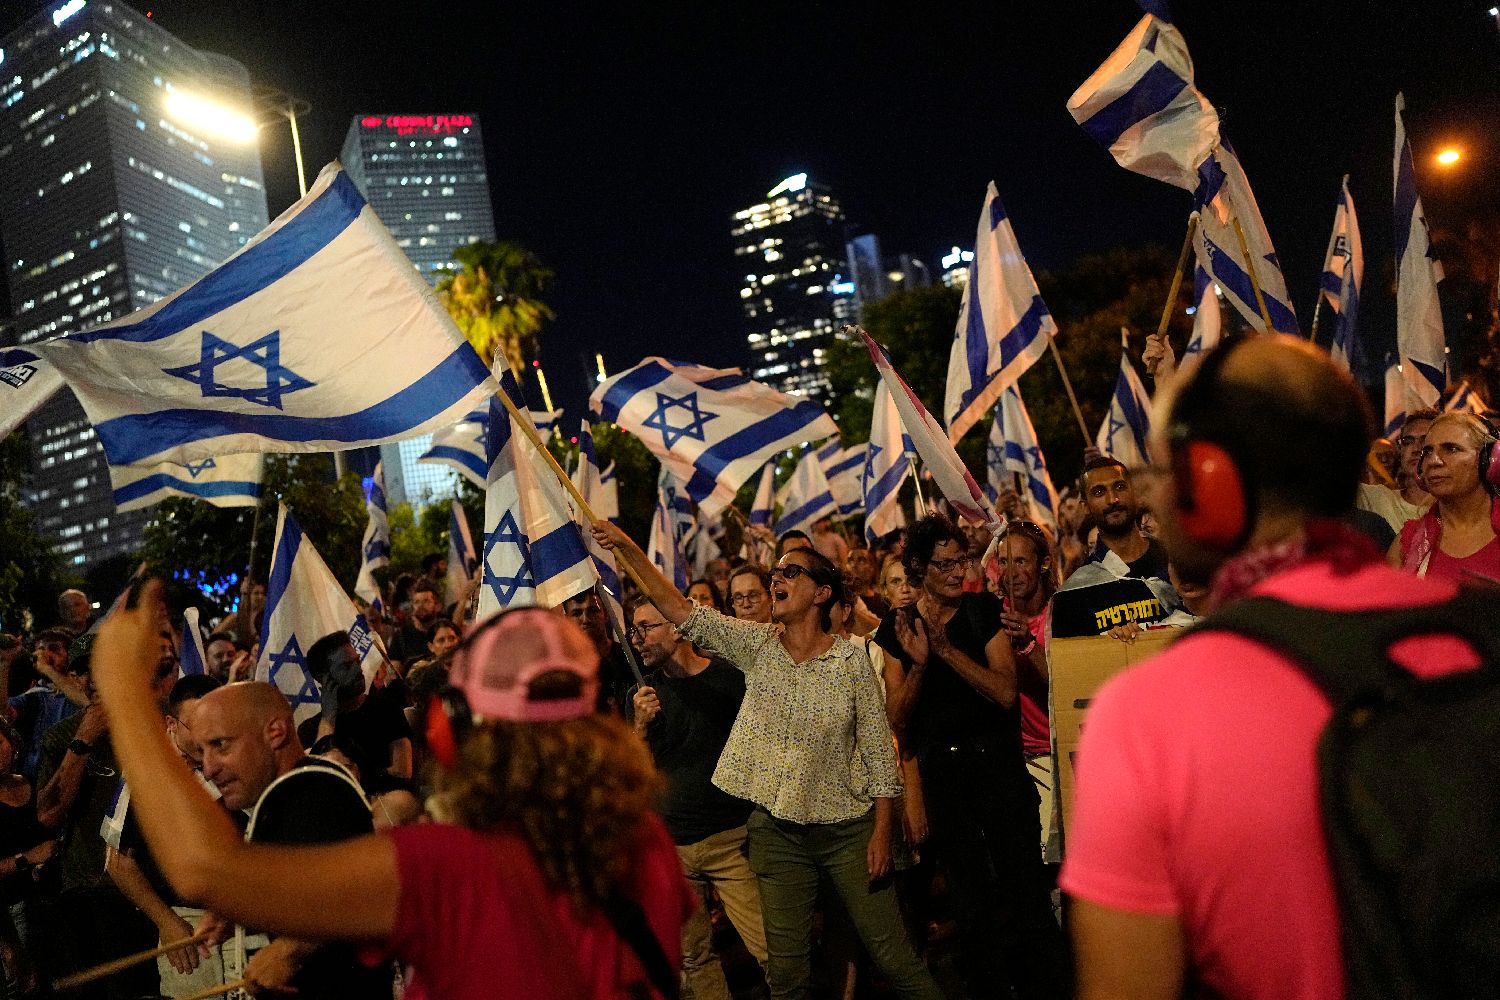 以色列爆大規模示威 民眾反對政府藉改革控制司法[影] | 國際 | 中央社 CNA